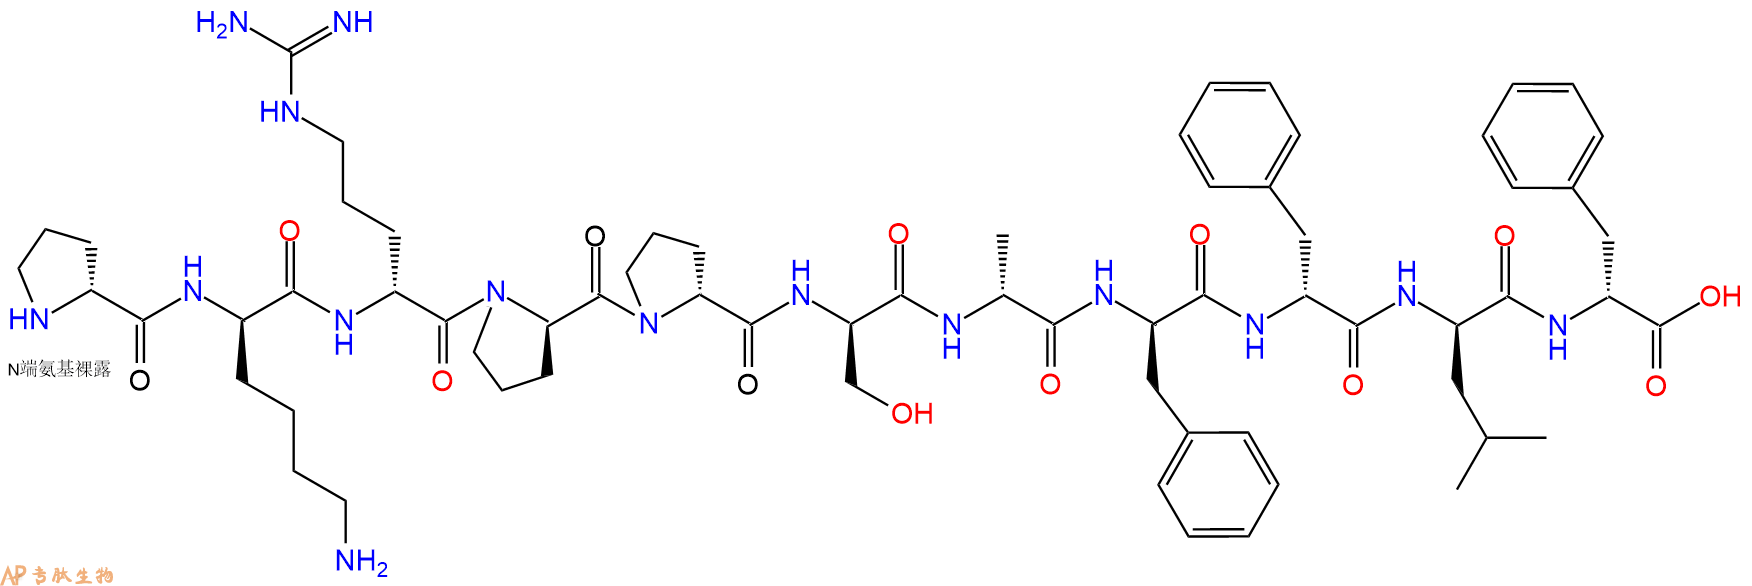 专肽生物产品H2N-DPro-DLys-DArg-DPro-DPro-DSer-DAla-DPhe-DPhe-D